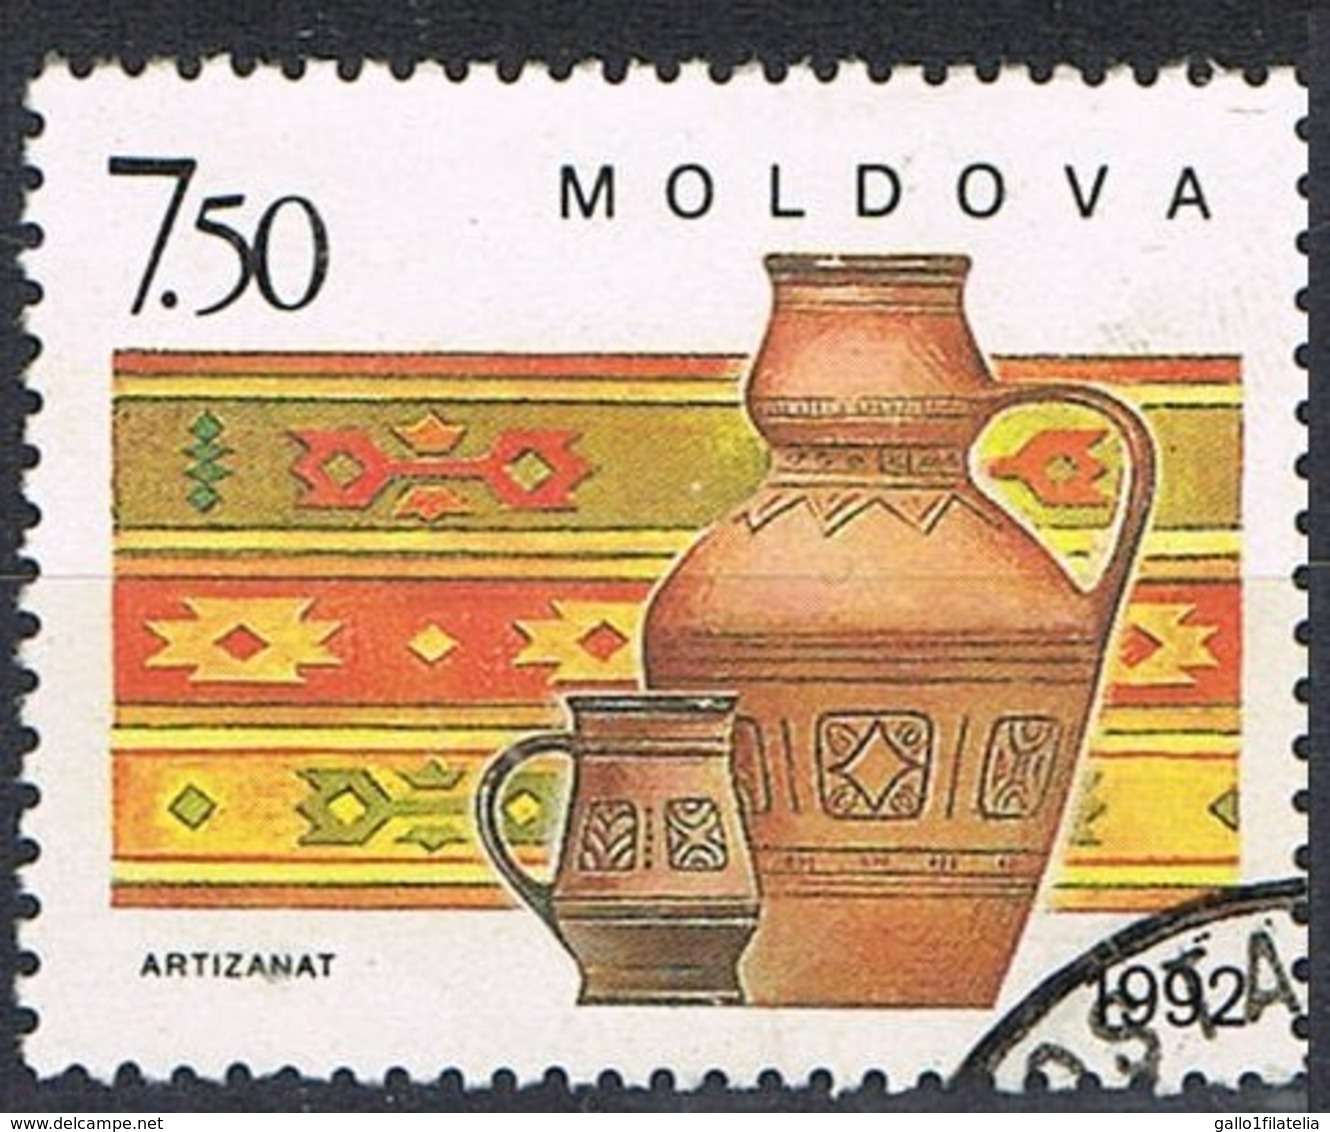 1992 - MOLDAVIA / MOLDOVA - ARTIGIANATO / HANDICRAFT - USATO / USED - Moldavia